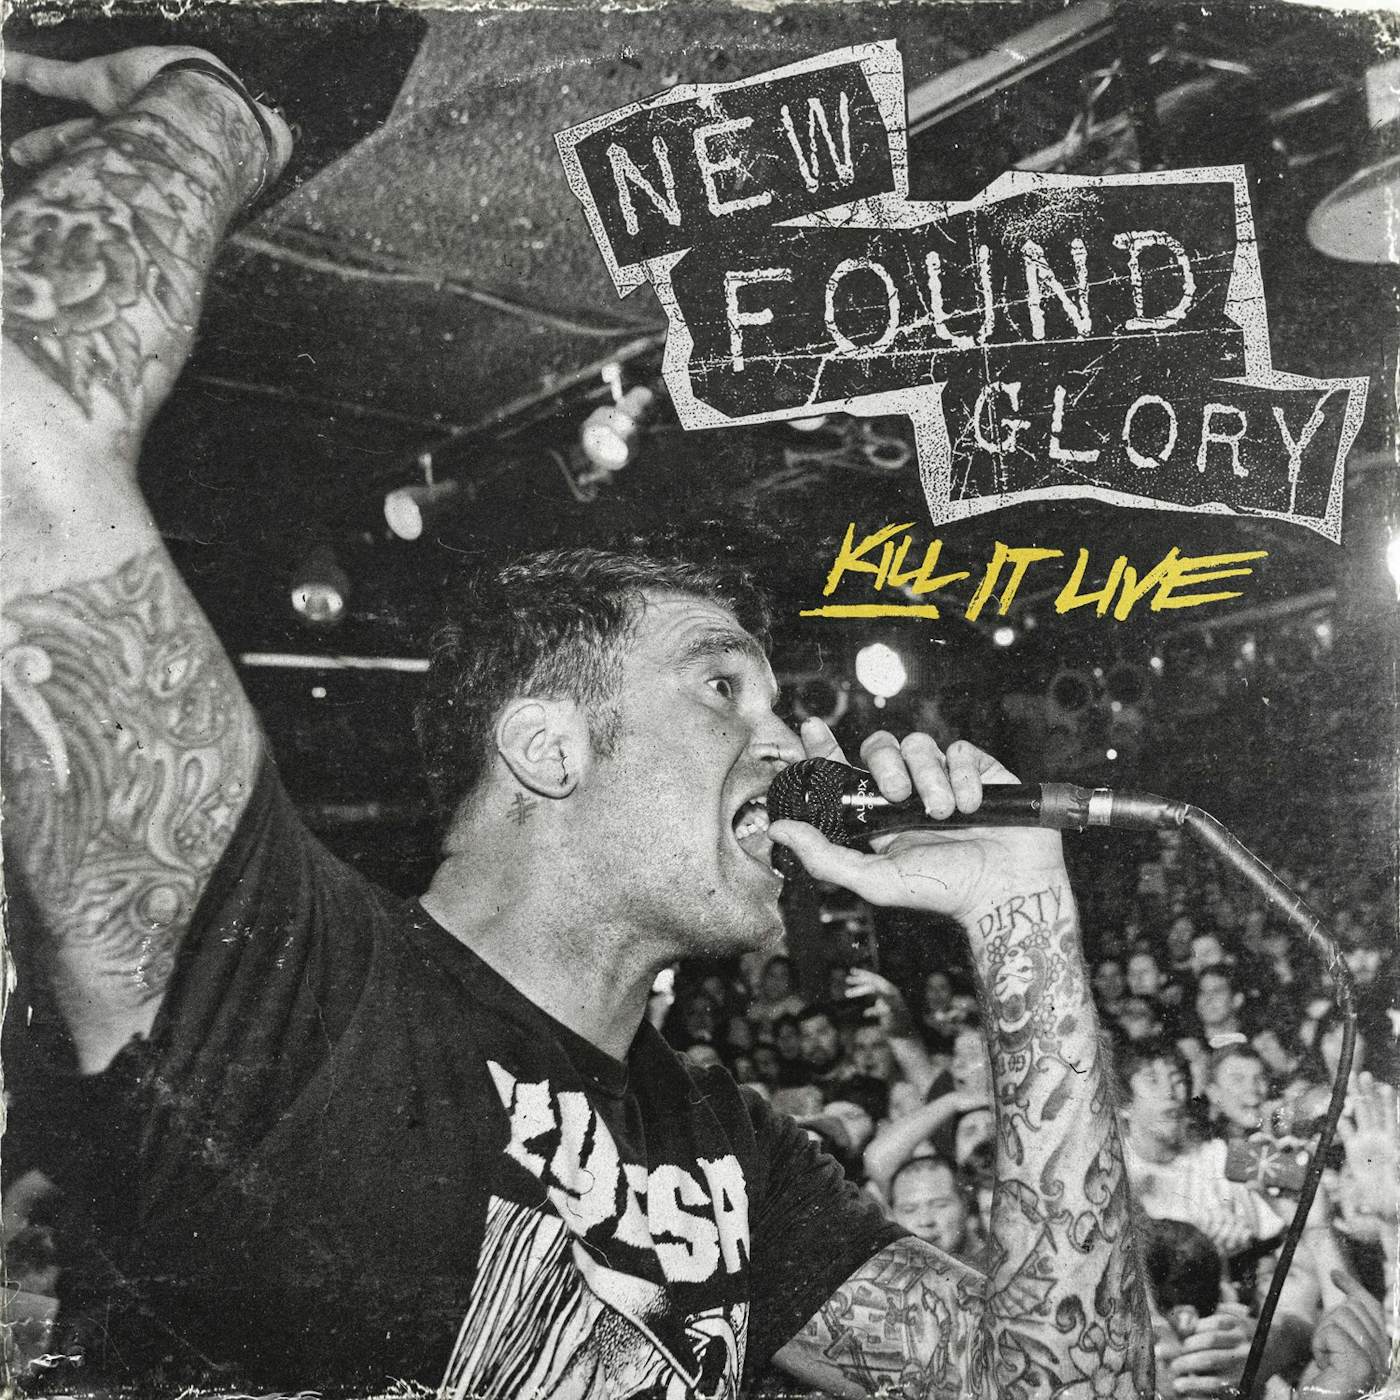 New Found Glory KILL IT LIVE CD